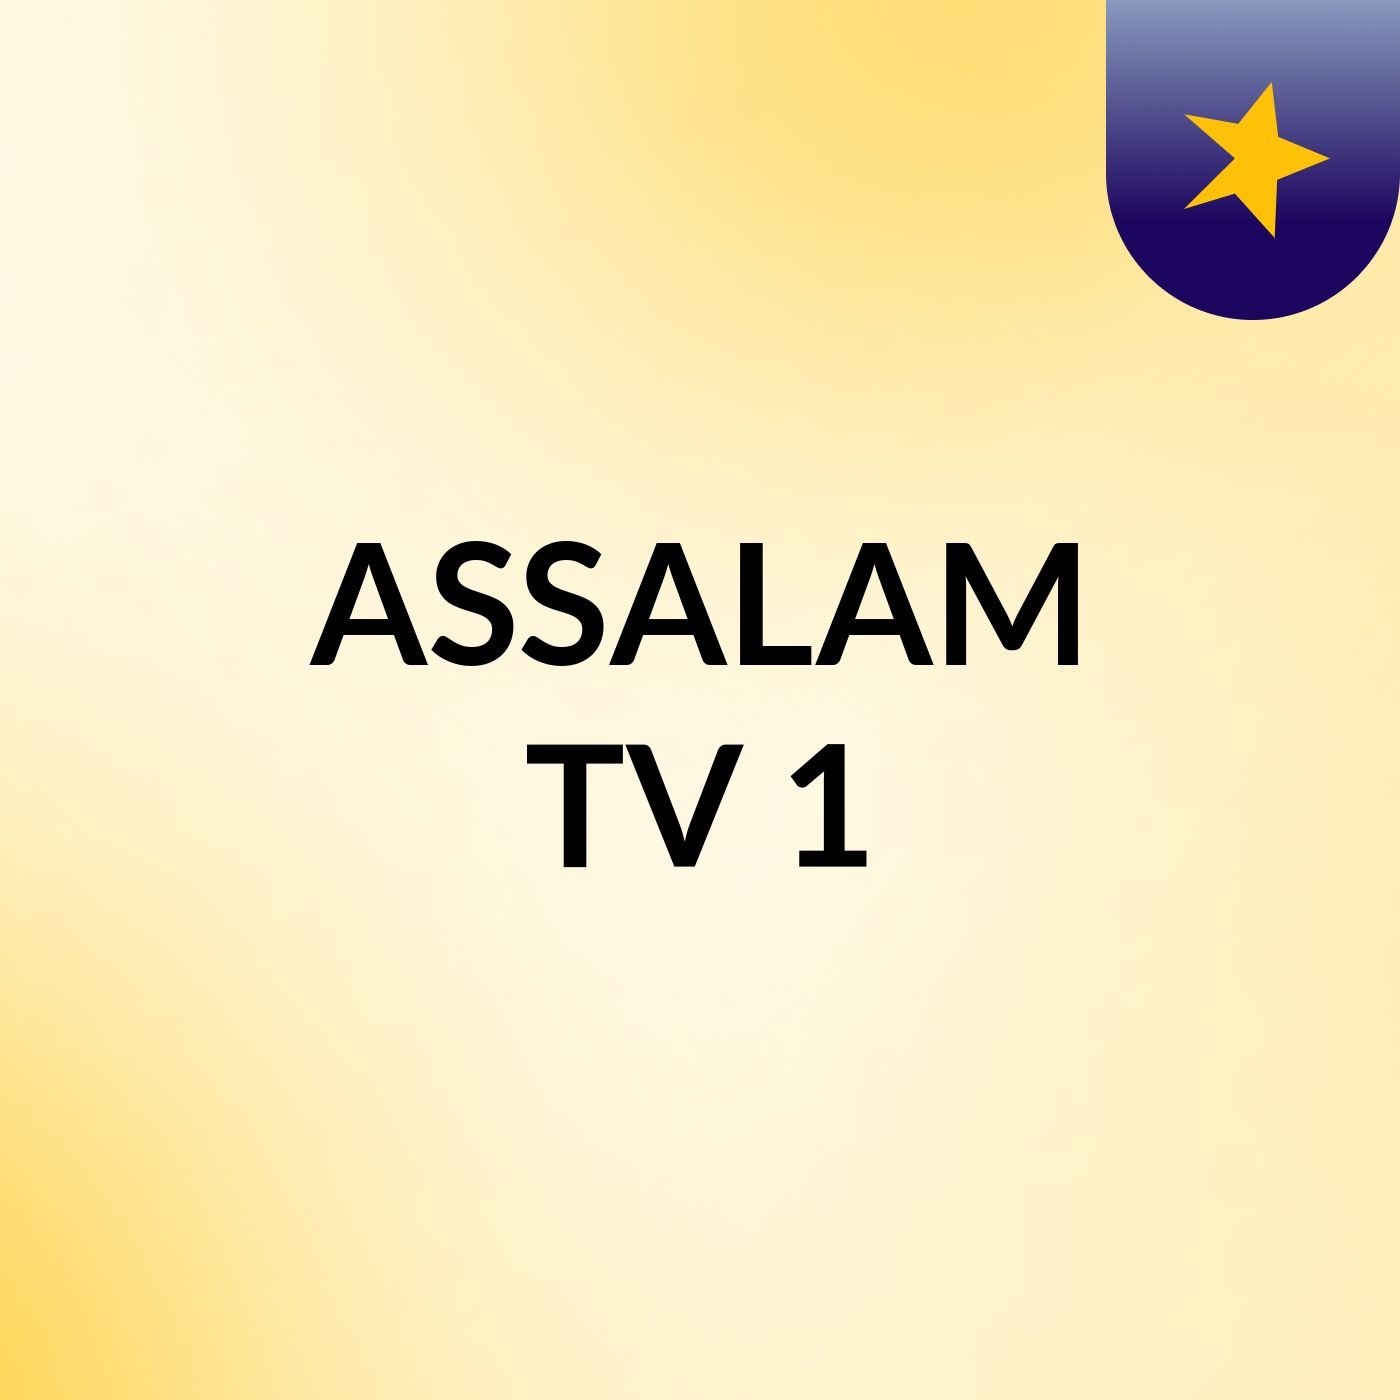 ASSALAM TV 1